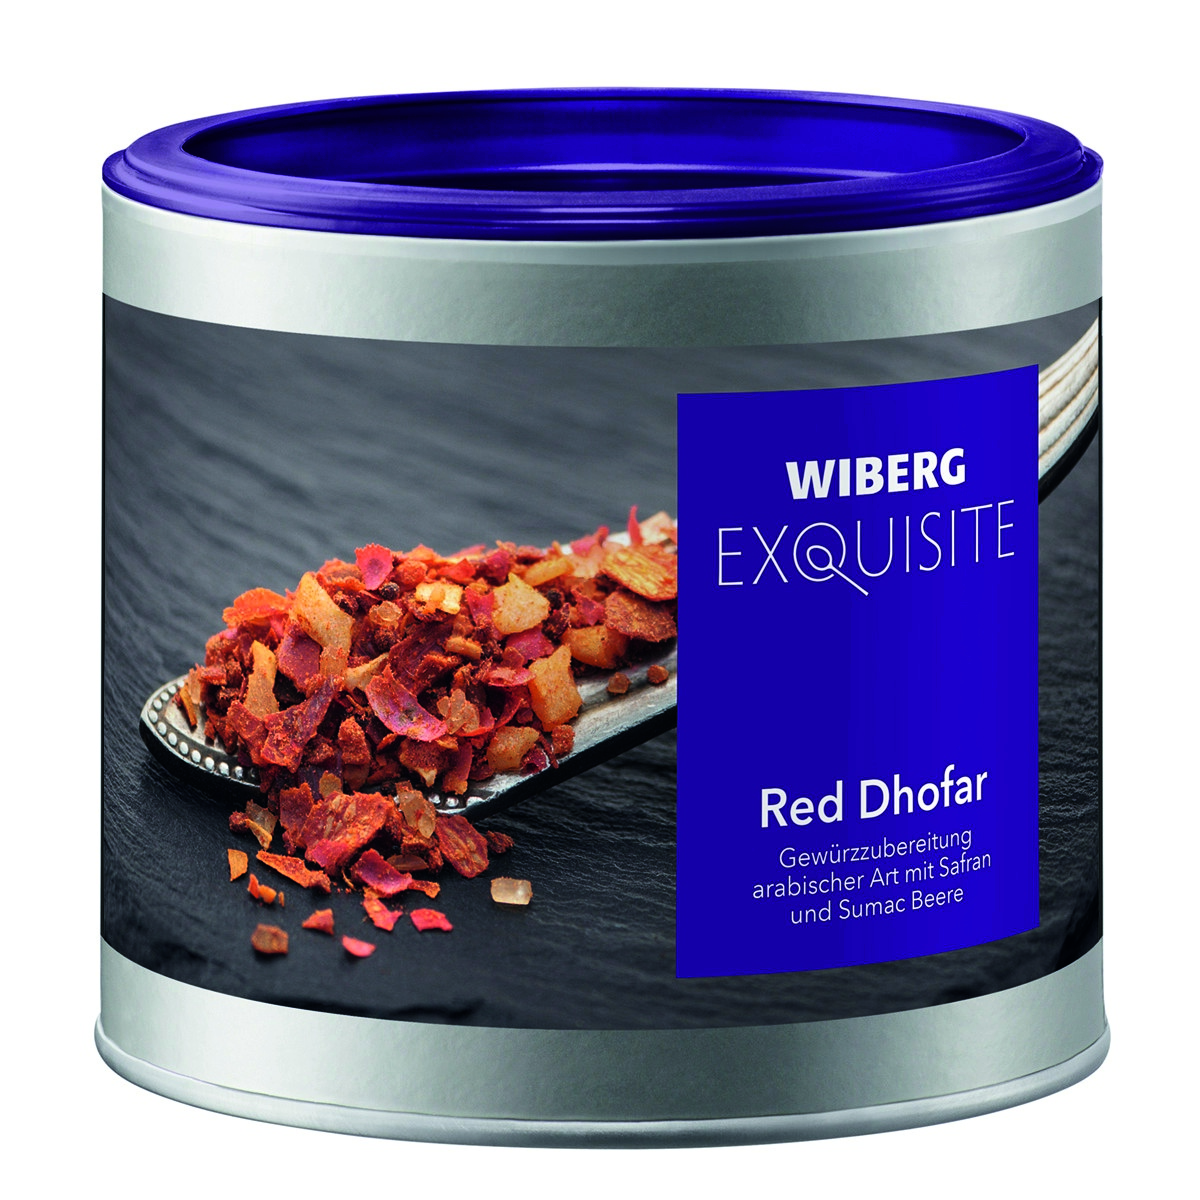 WIBERG Exquisite Red Dhofar